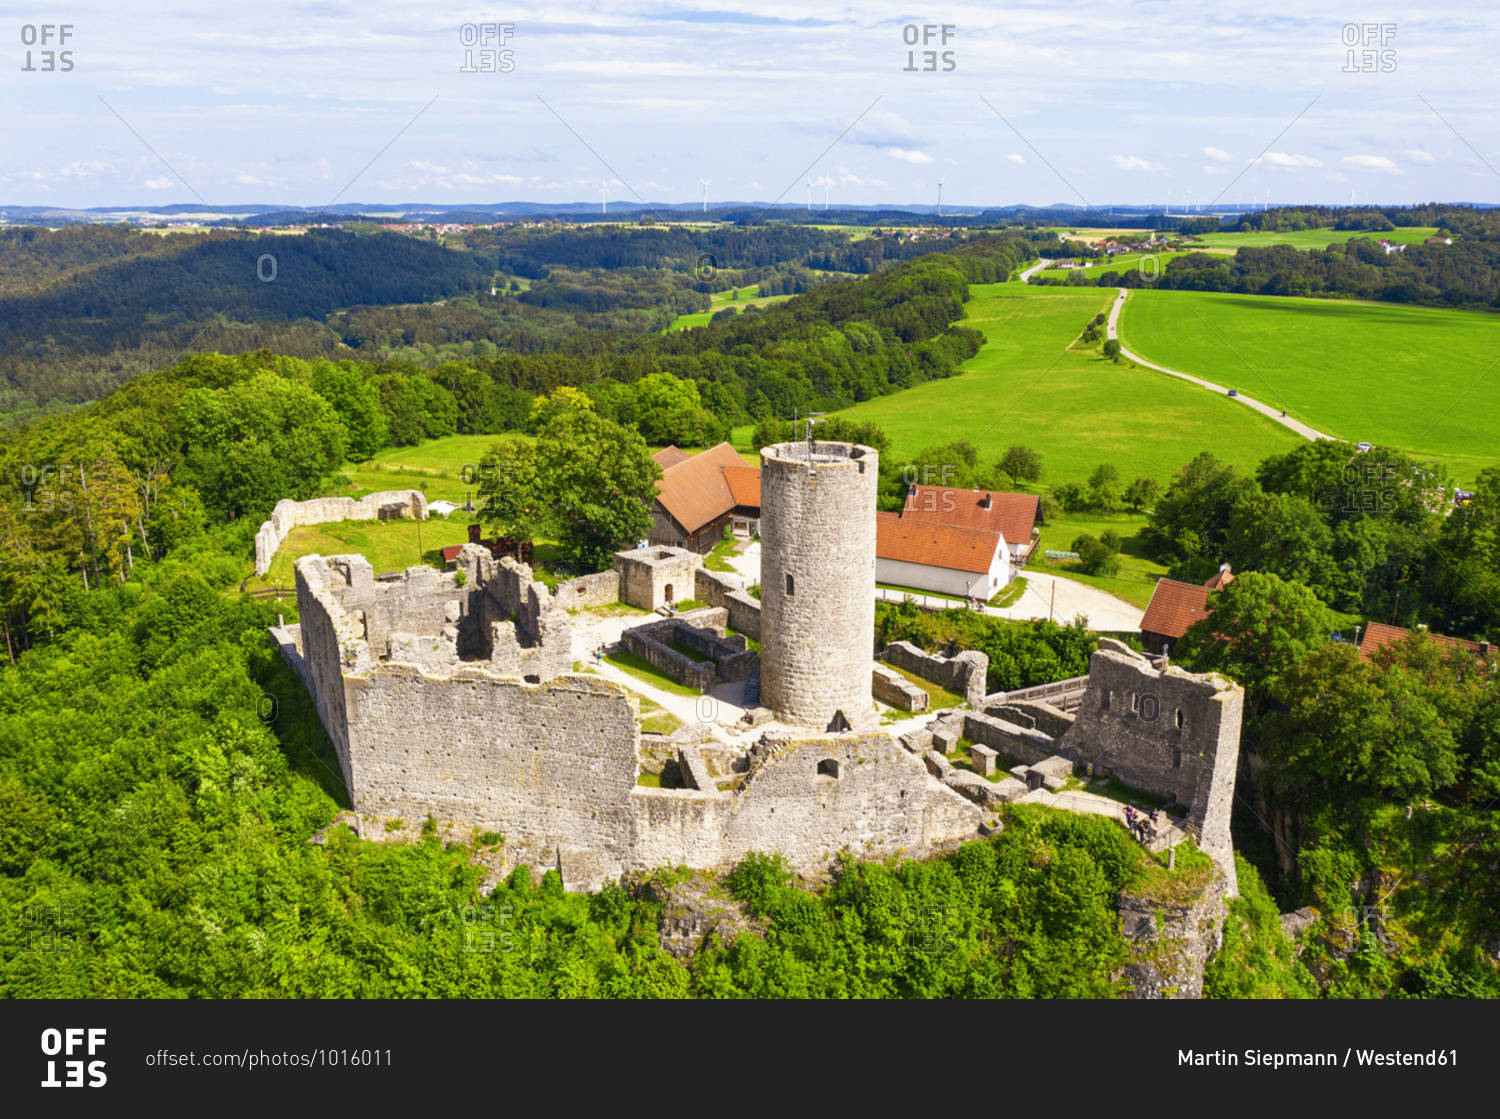 Germany- Bavaria- Neumarkt in der Oberpfalz- Drone view of Burgruine Wolfstein castle in spring